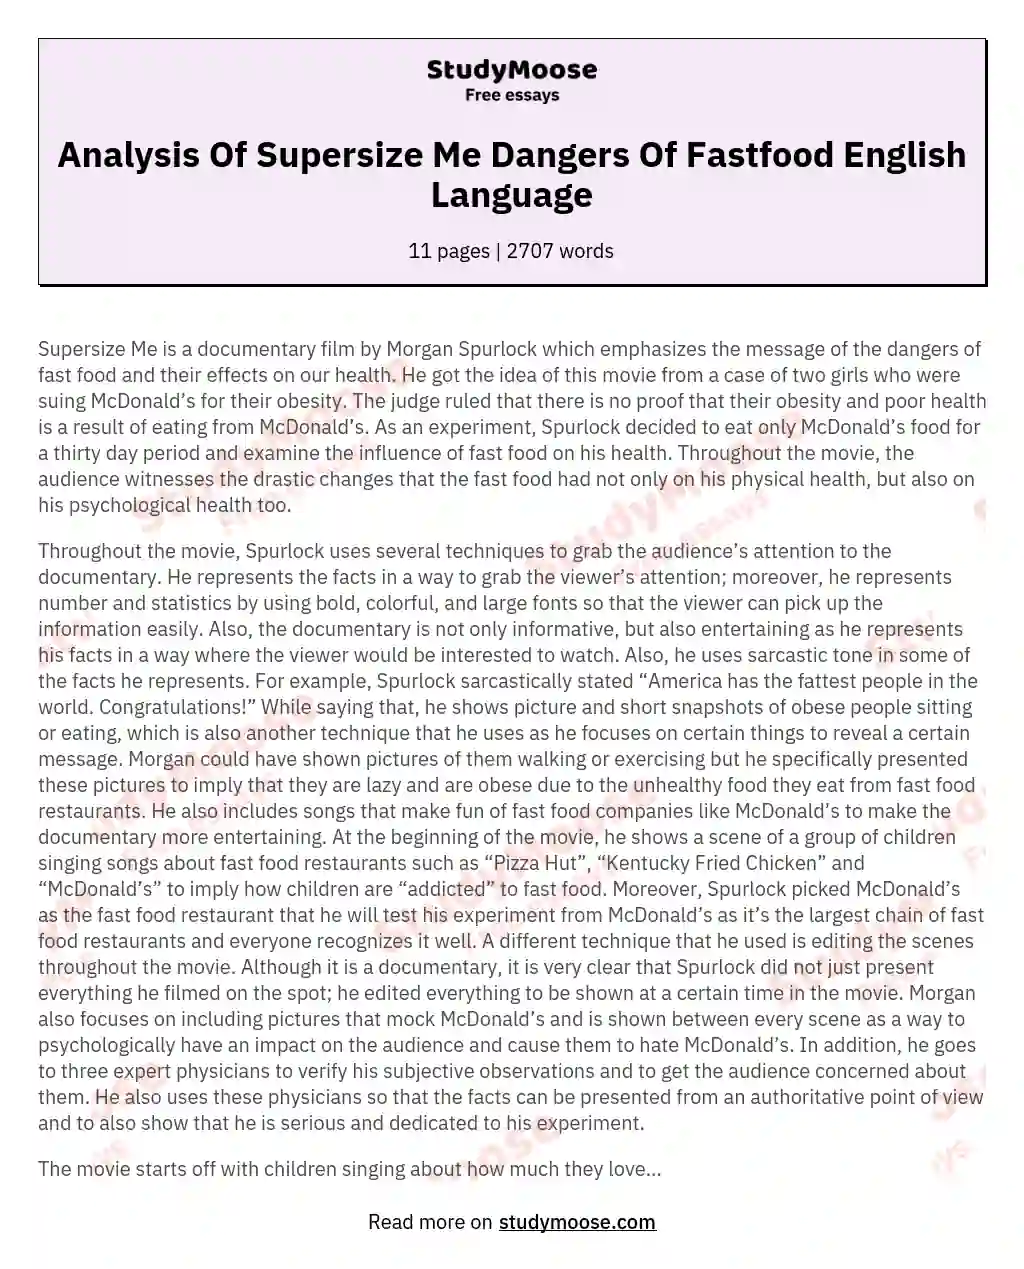 Analysis Of Supersize Me Dangers Of Fastfood English Language